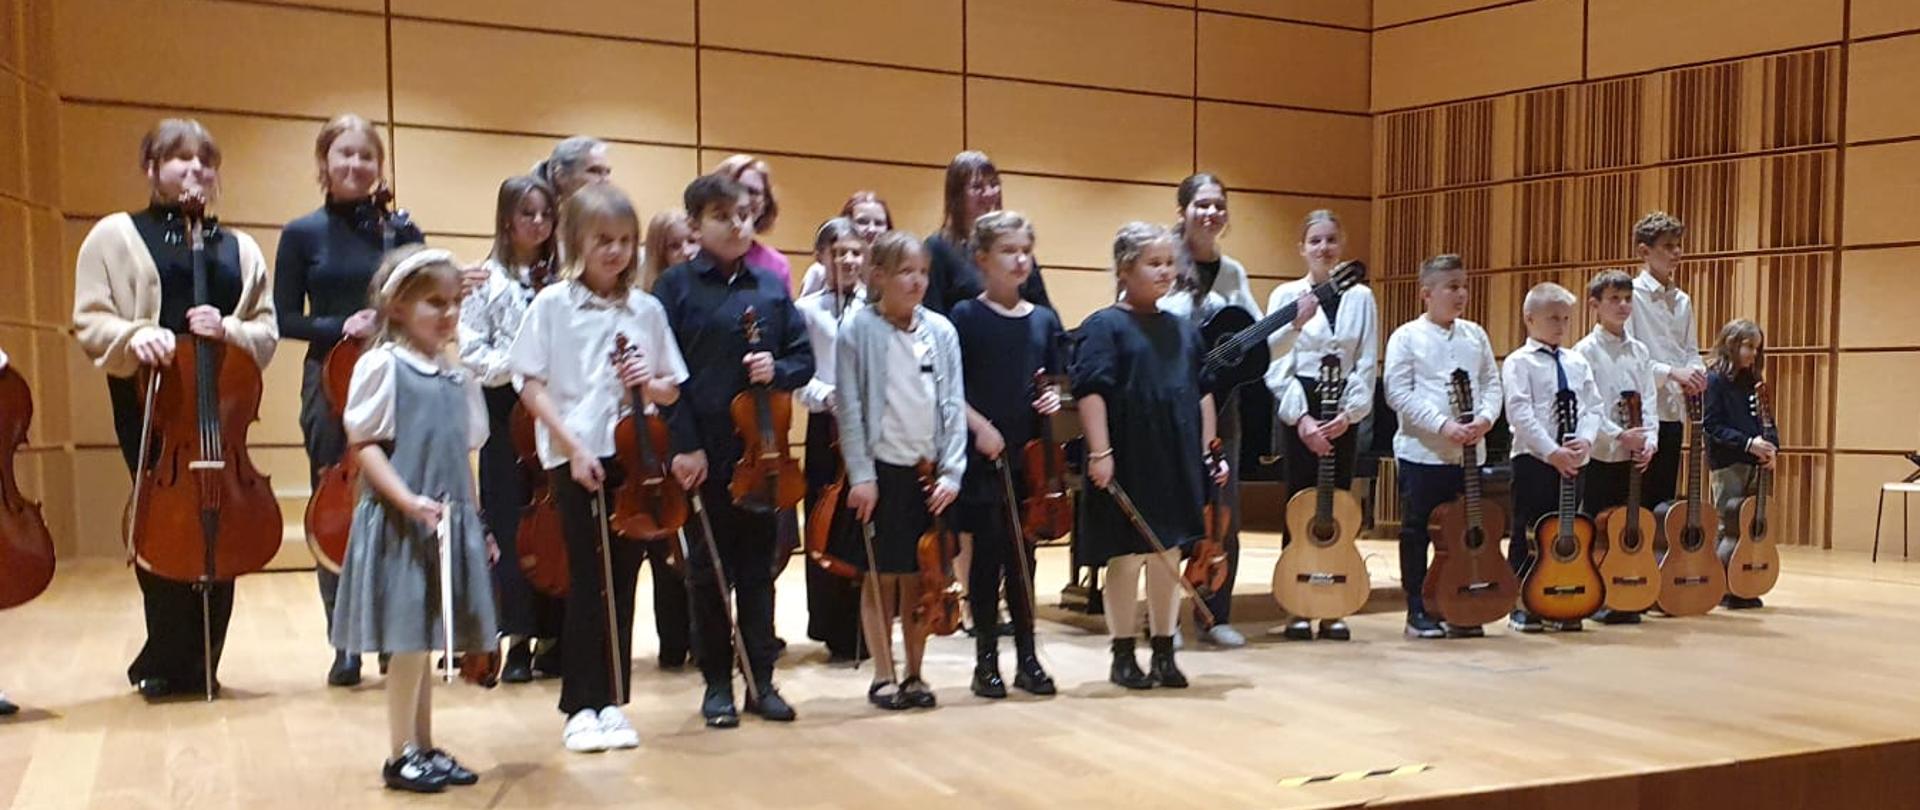 Grupa uczniów oraz nauczycieli ustawiona w dwóch rzędach na scenie sali koncertowej. Po prawej stronie uczniowie trzymają gitary, po lewej wiolonczele, a w środku skrzypce. 